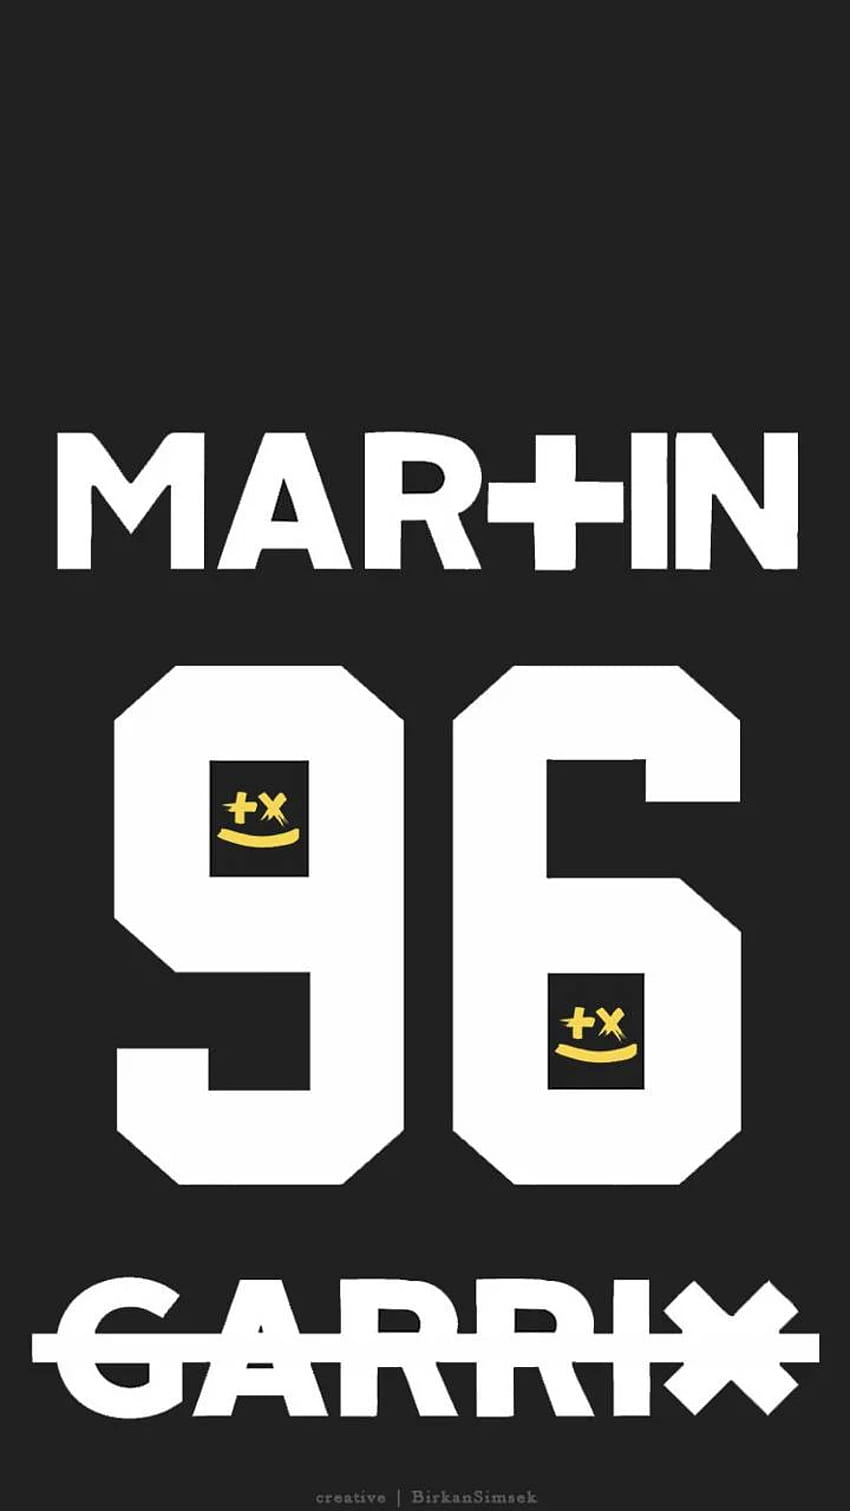 Martin Garrix by birkansmsk • ZEDGE™, martin garrix logo HD phone wallpaper